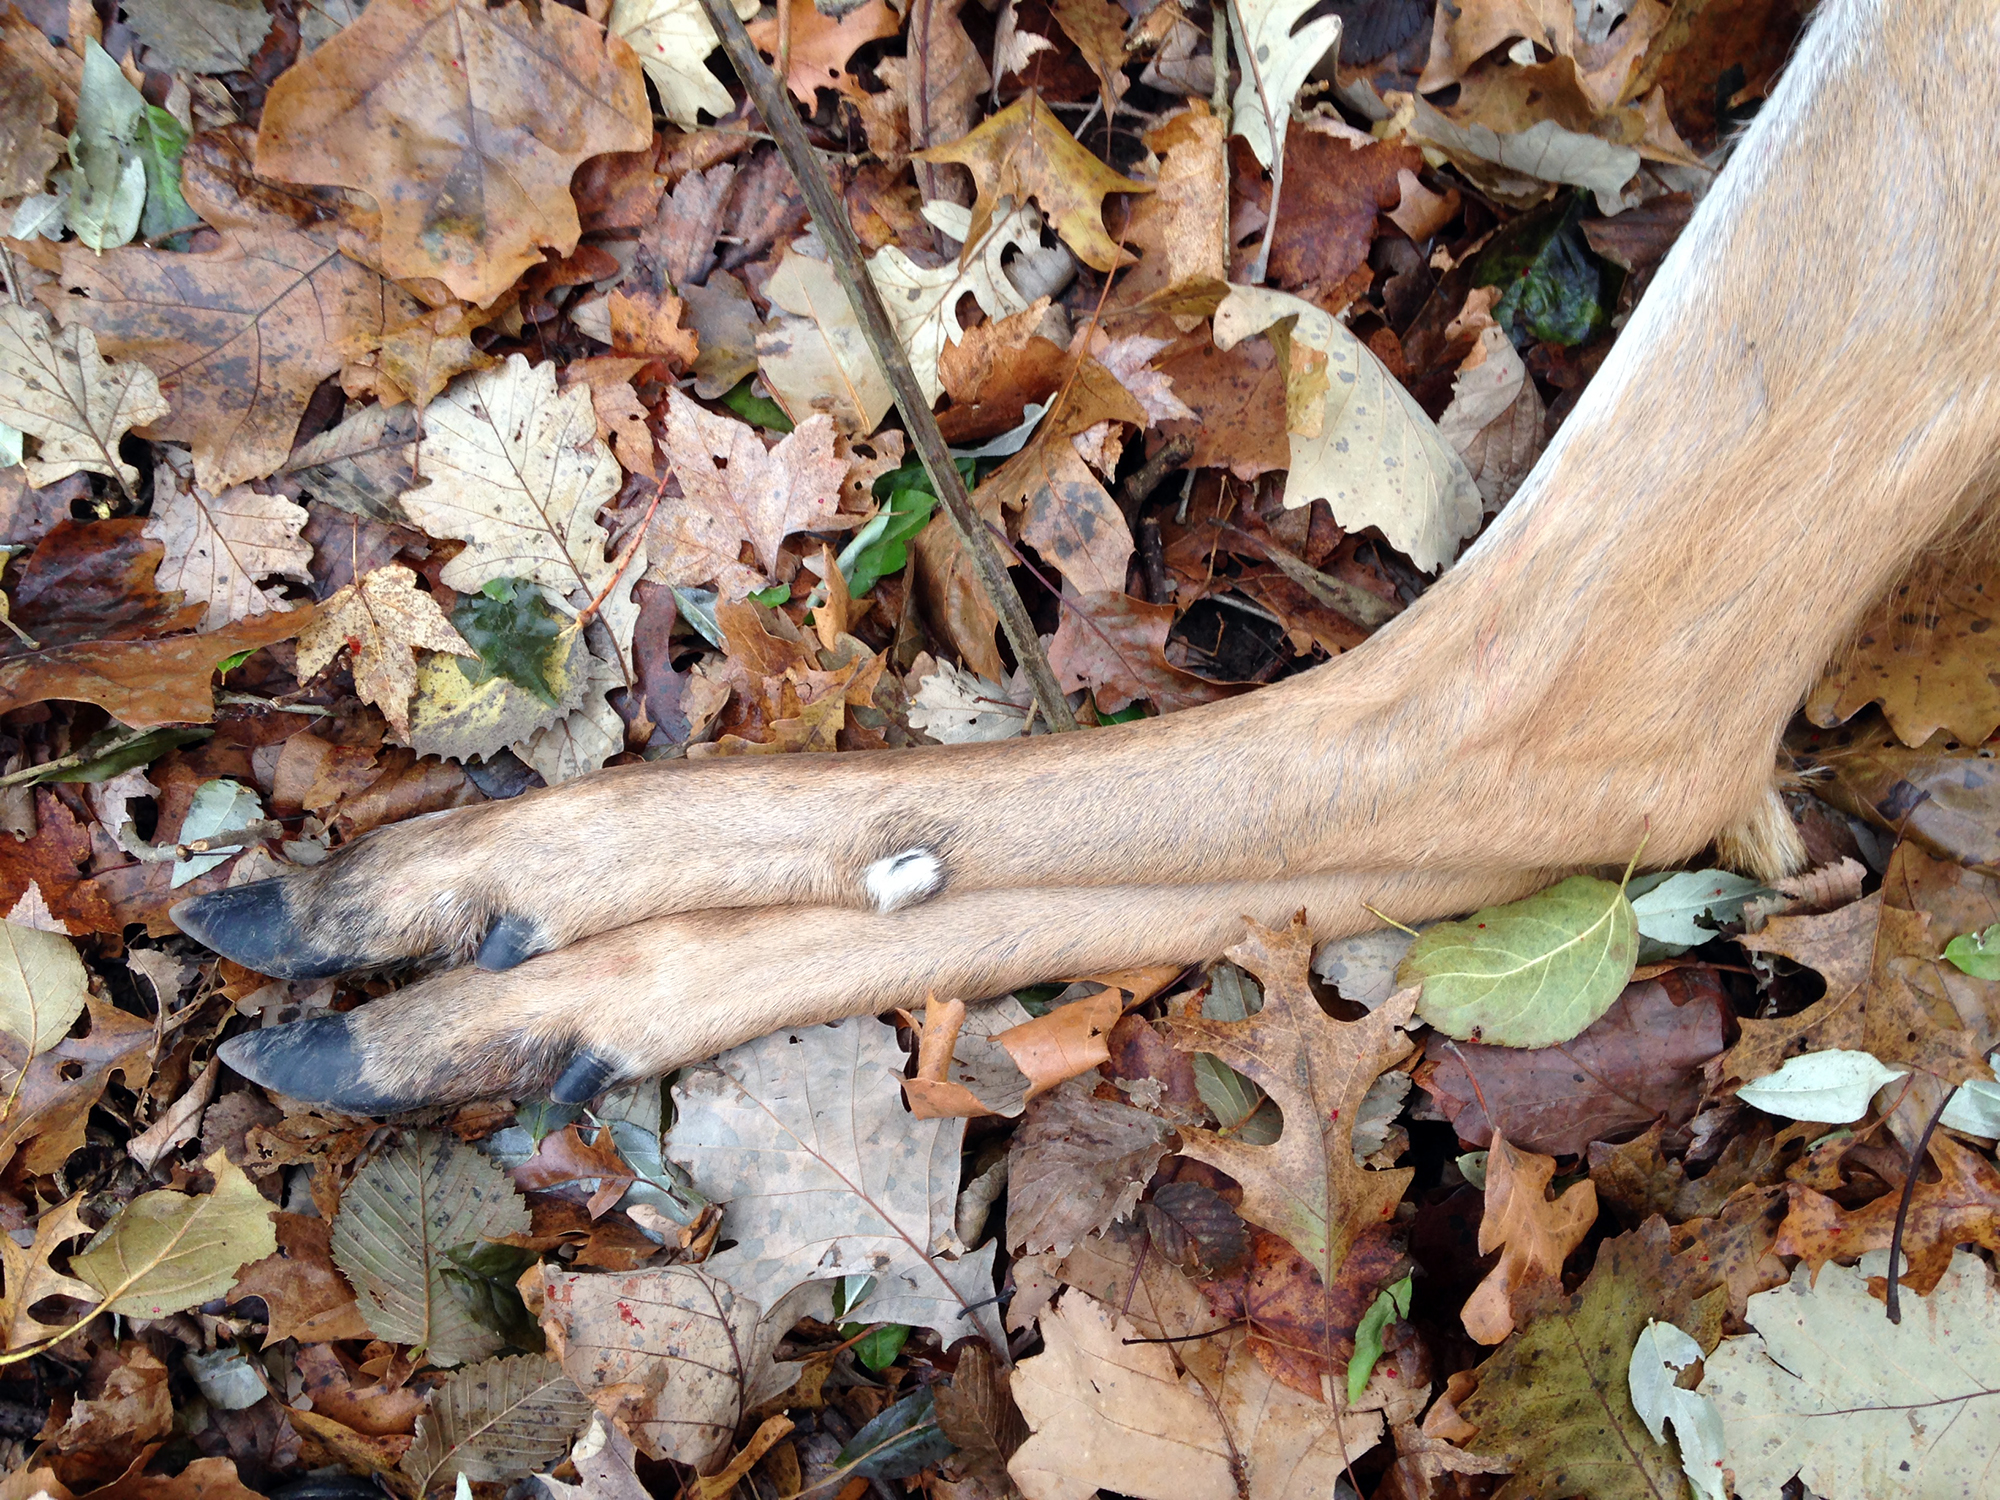 Deer legs